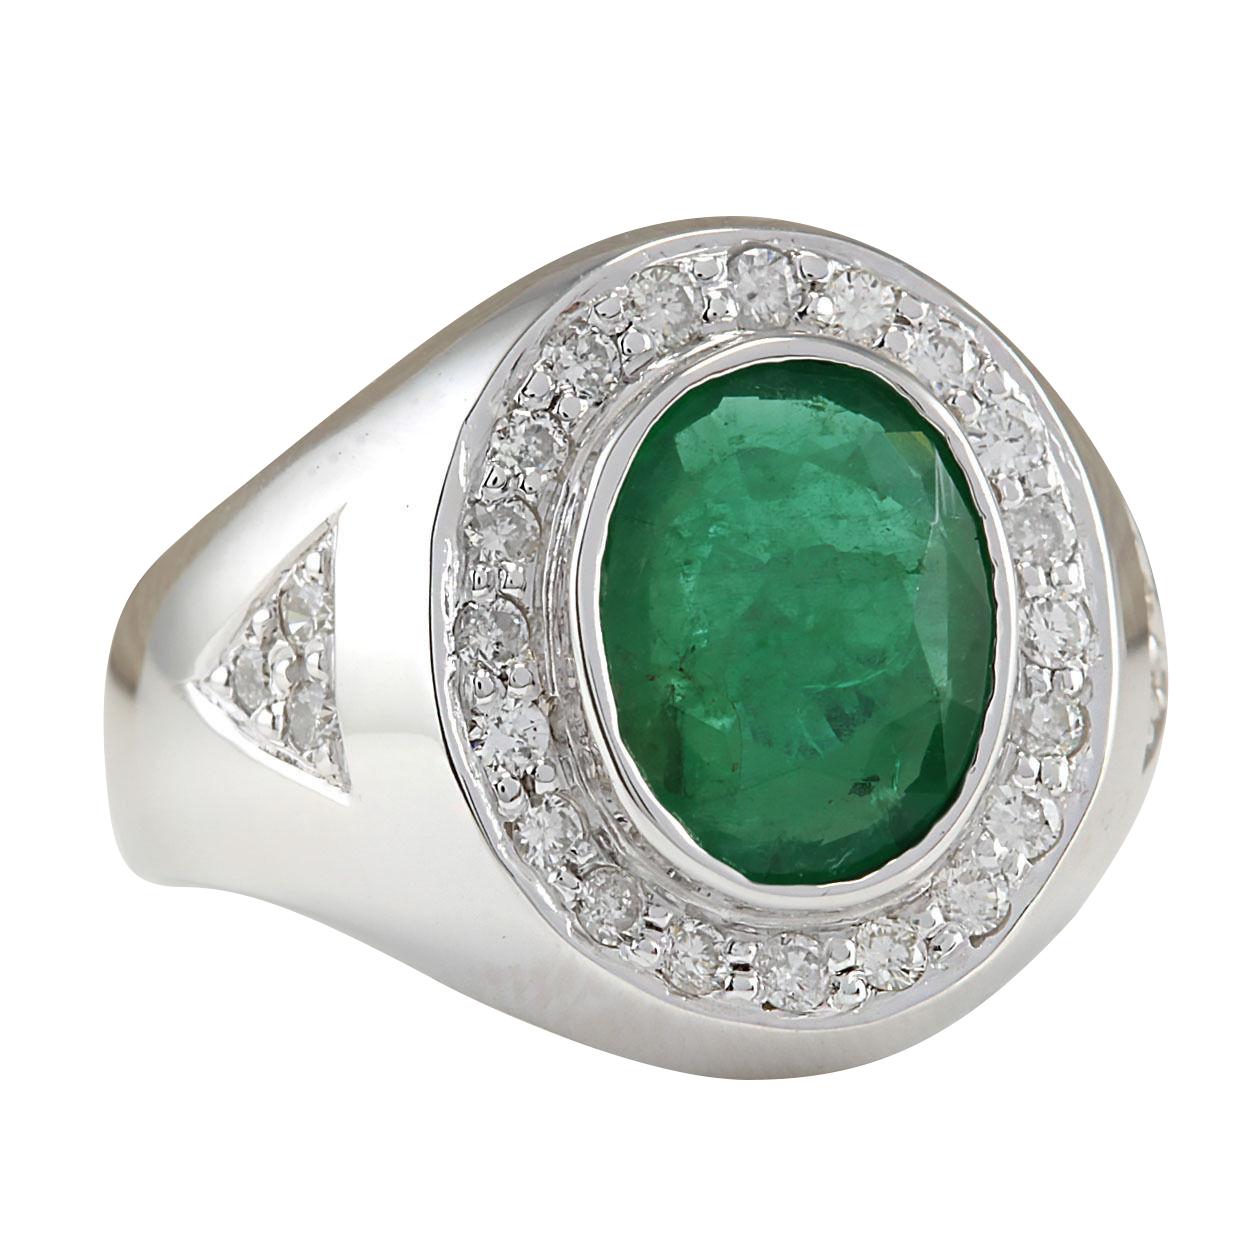 3.15 Carat Natural Emerald 14 Karat White Gold Diamond Ring
Stamped: 14K White Gold
Total Ring Weight: 8.5 Grams
Total Natural Emerald Weight is 2.60 Carat (Measures: 12.00x10.00 mm)
Color: Green
Total Natural Diamond Weight is 0.55 Carat
Color: